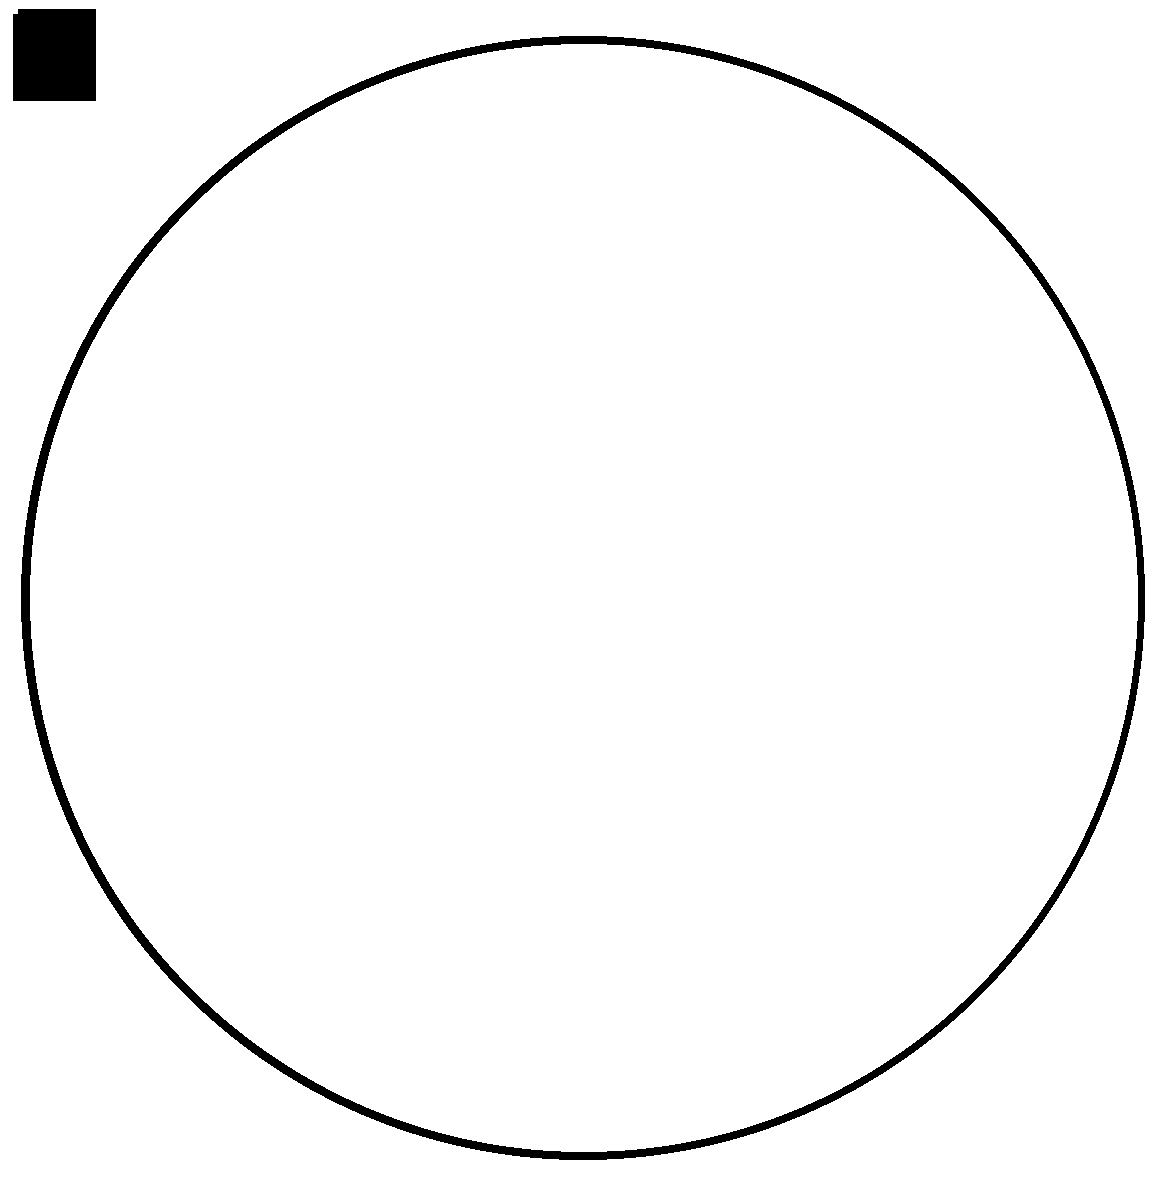 Круг з. Черно белый круг. Круг контур. Круг по контуру. Кружок черно белый.